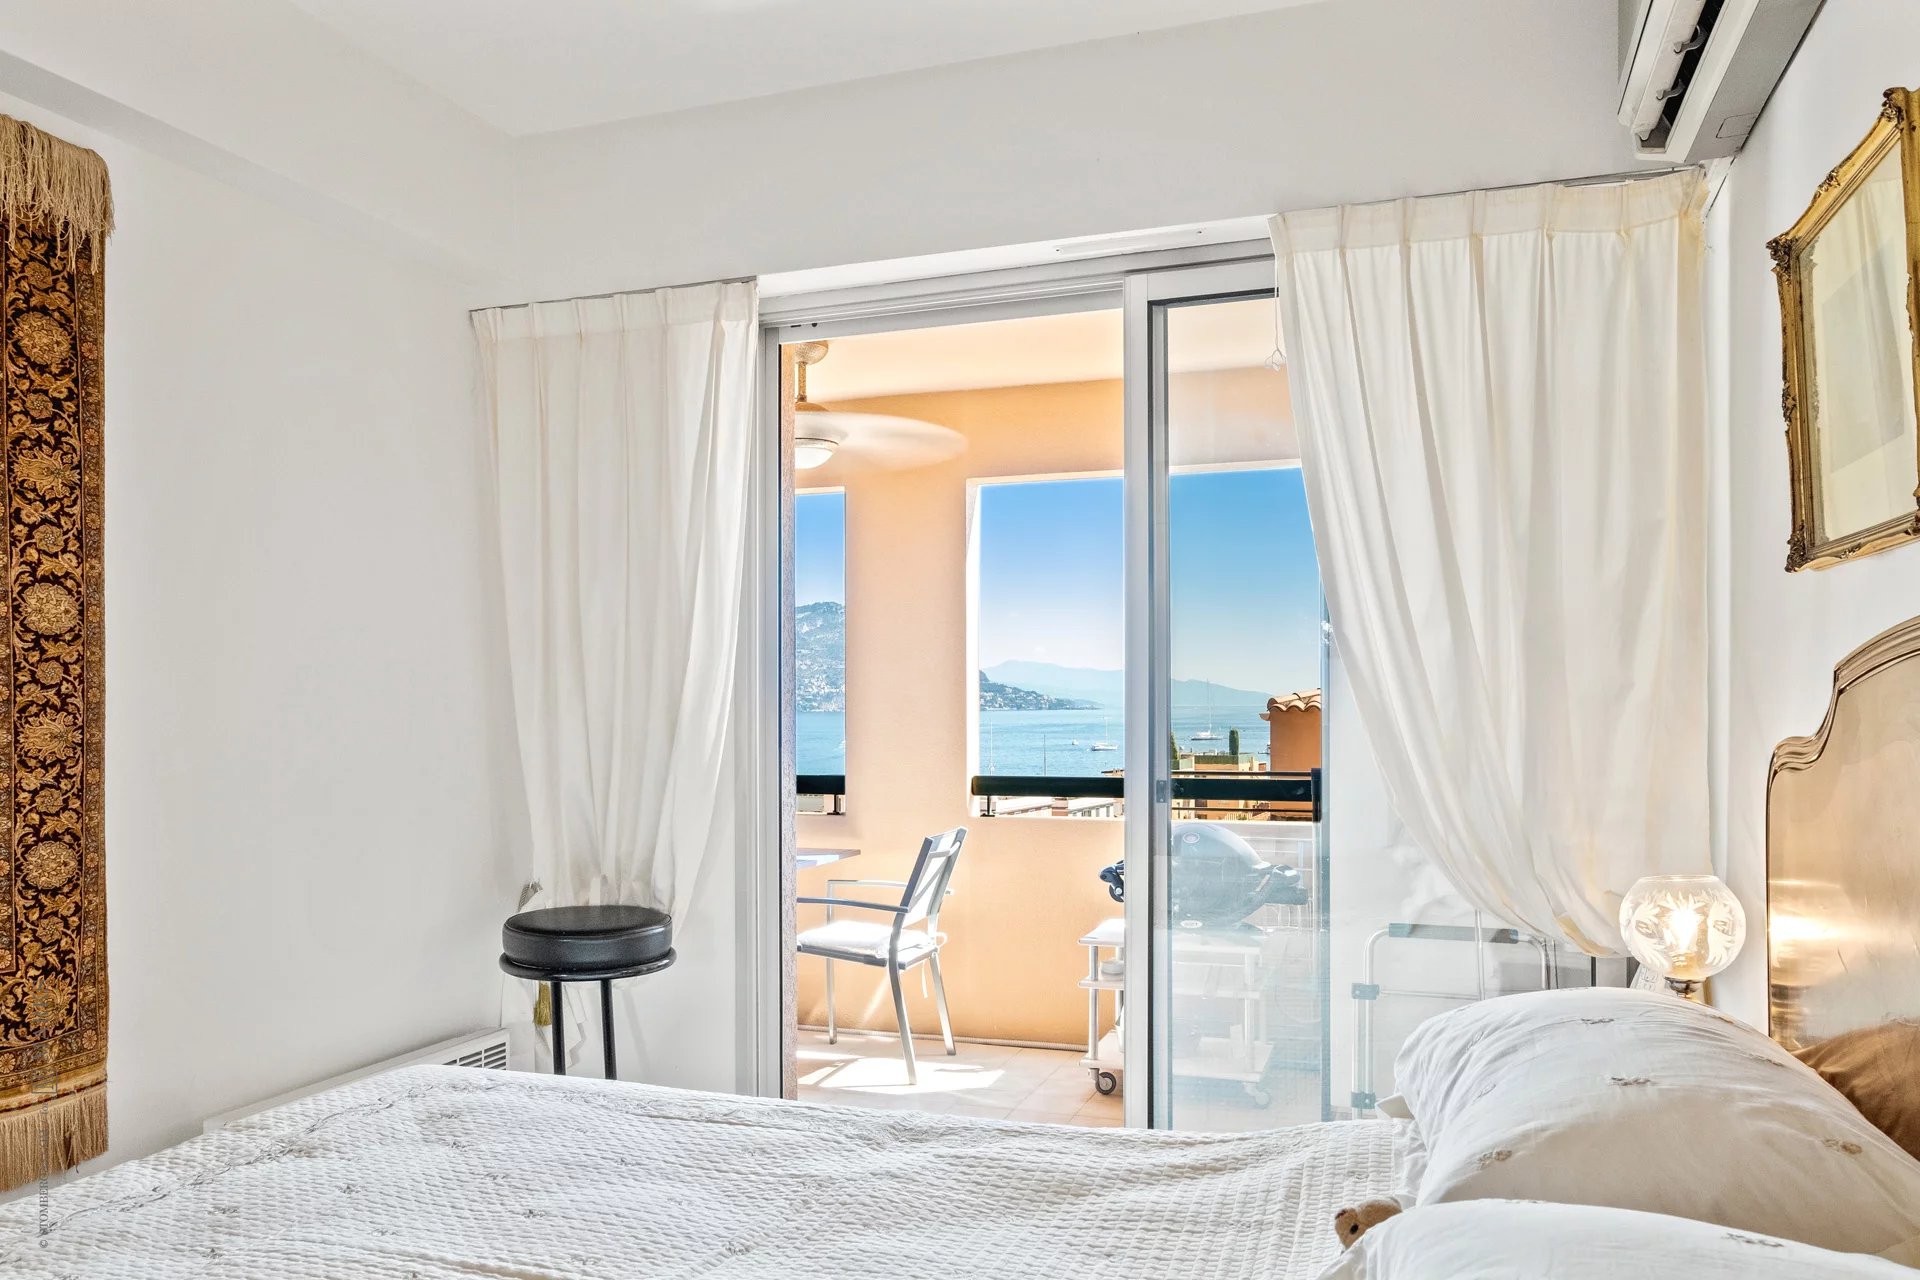 83021149-Appartement 2 pieces avec vue imprenable sur la mer et sa terrasse spacieuse